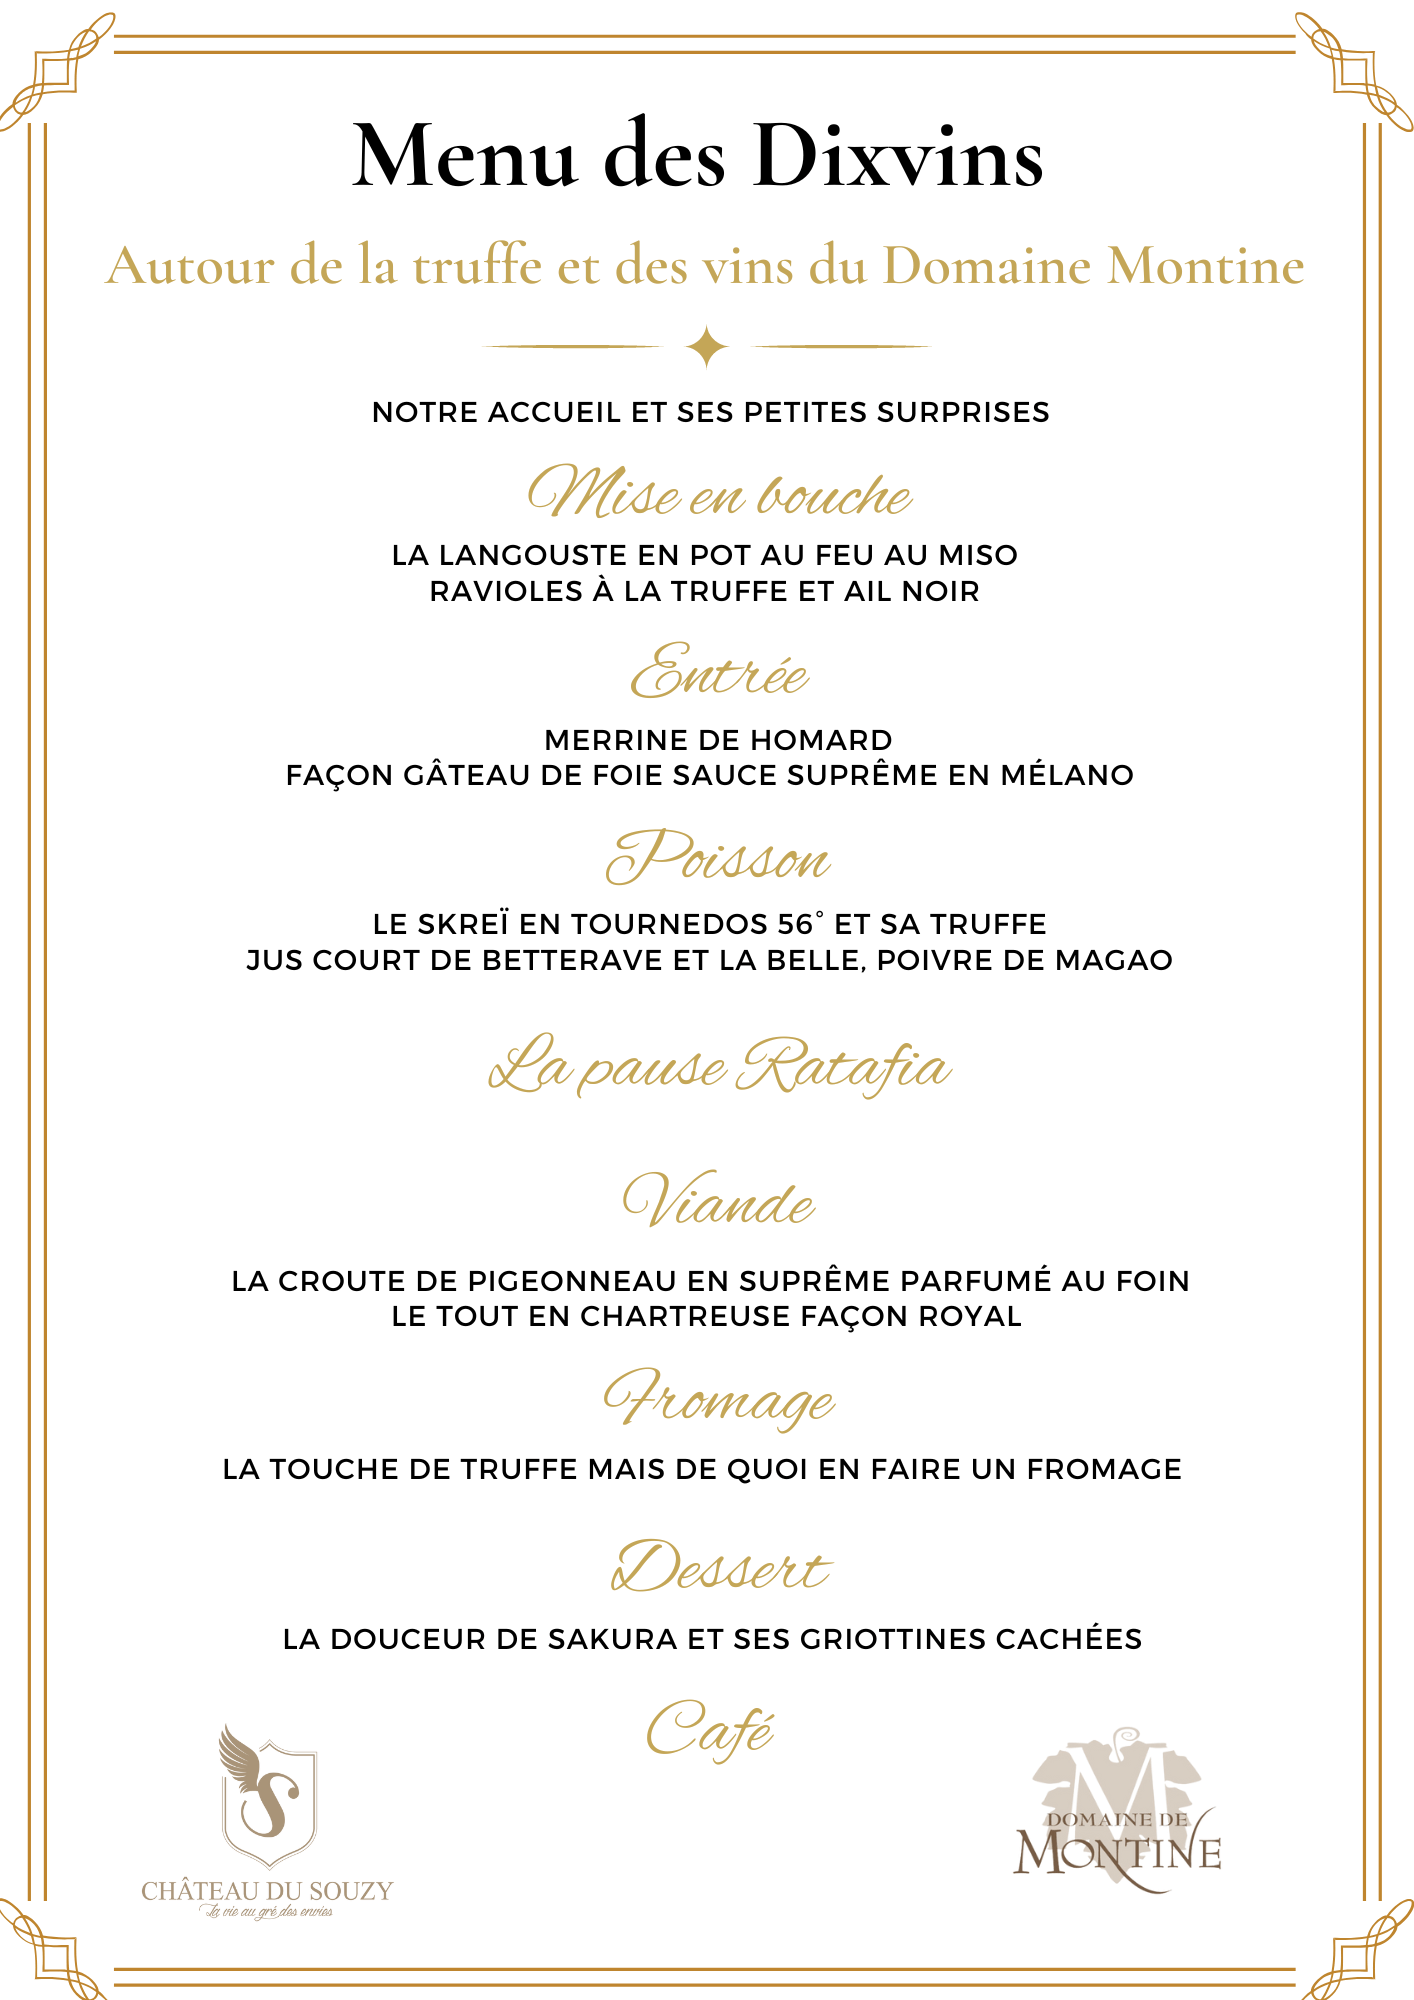 Le menu des Dixvins du 13 mars 2023 autour de la truffe